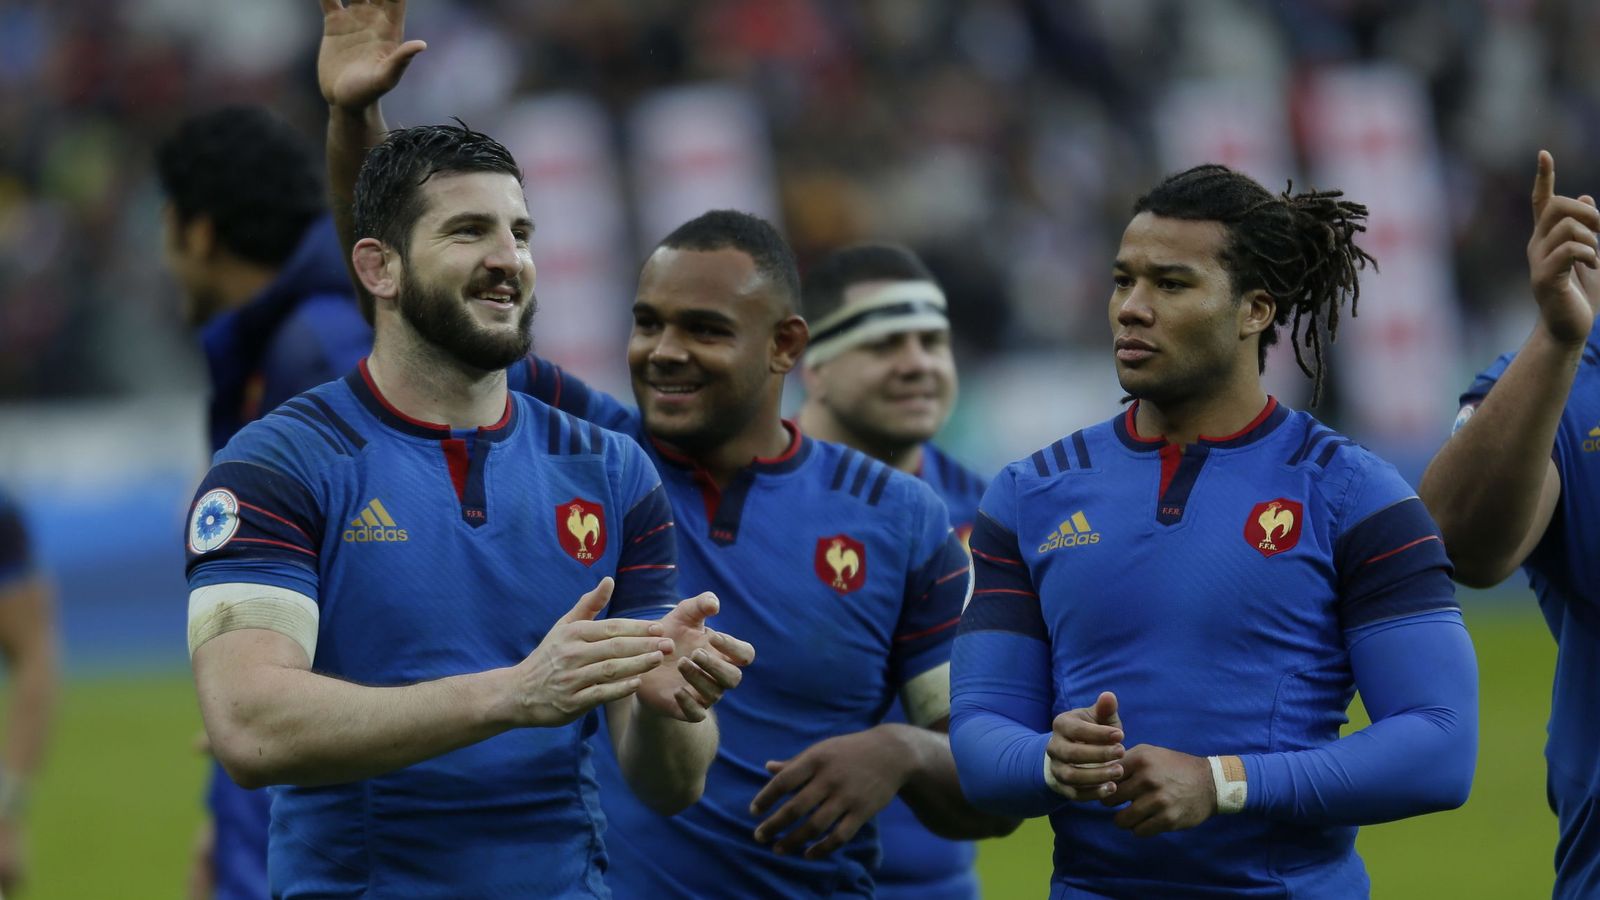 Foto: El equipo francés celebra una victoria (Cordon Press)